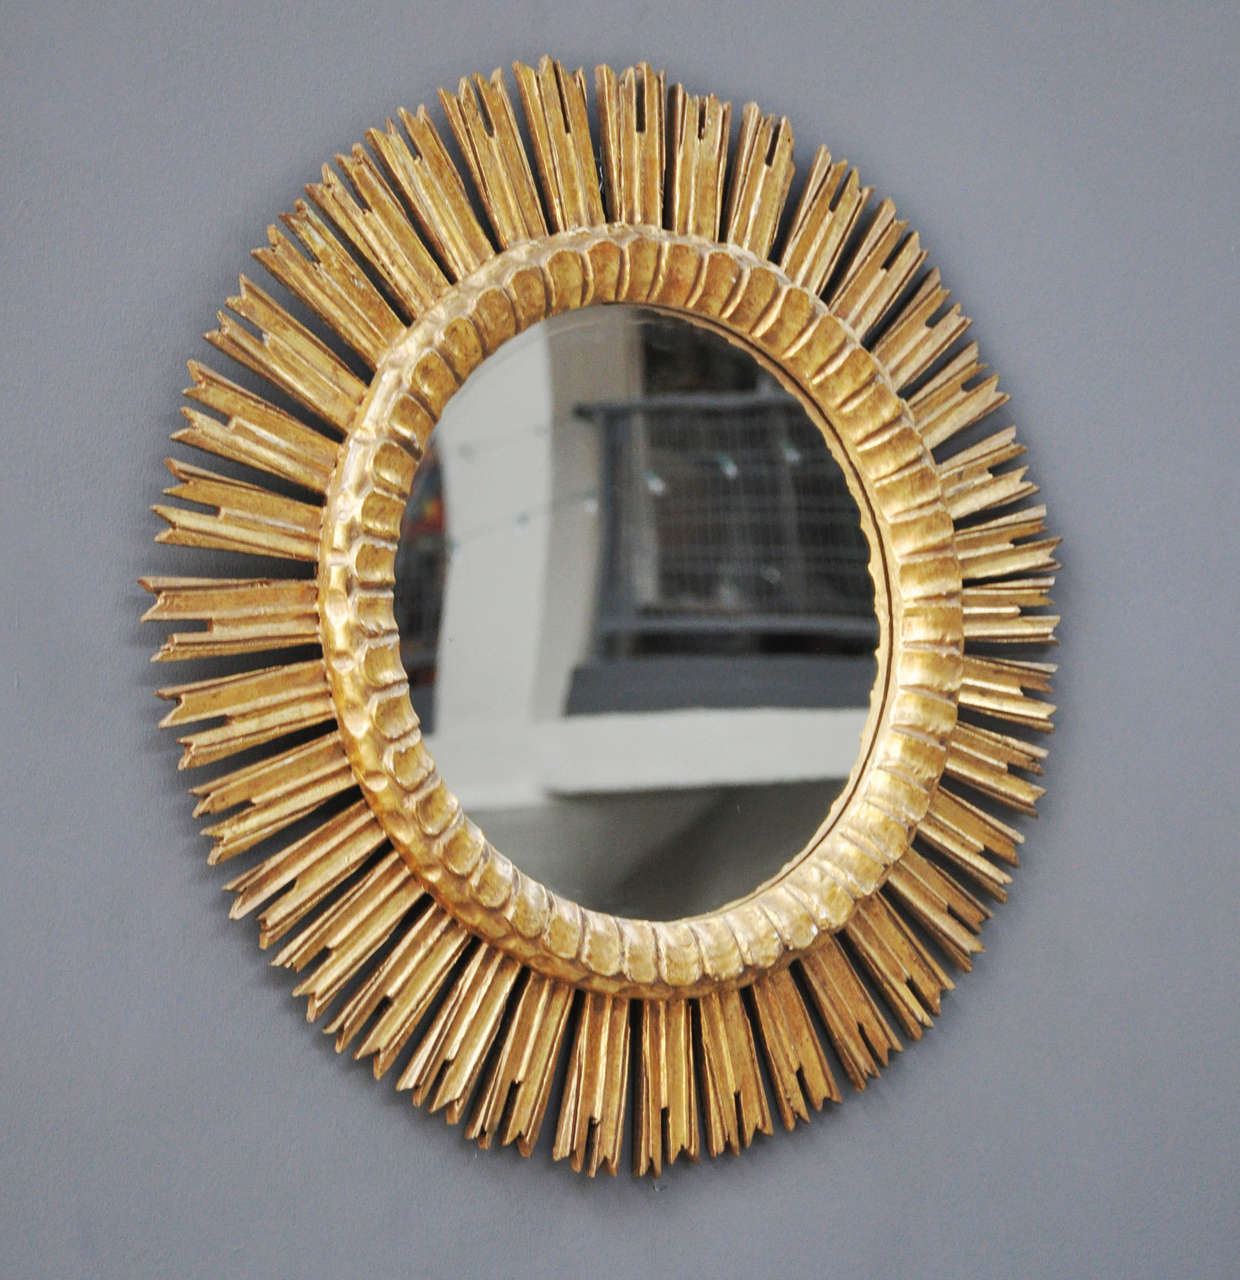 A mid-20th century French gold leaf sunburst mirror.